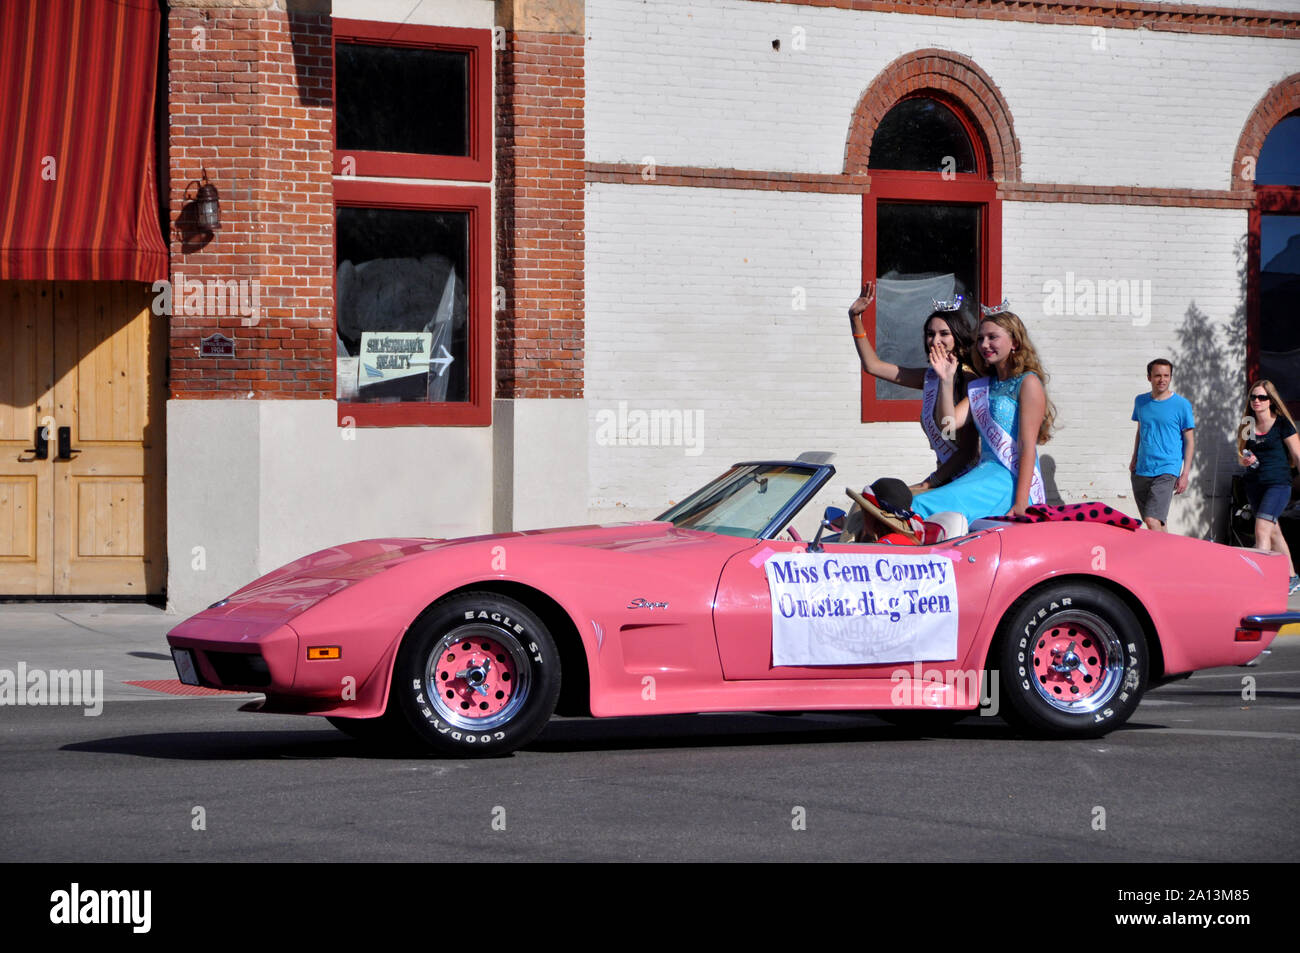 Miss Gem County herausragende Jugendlich, Emmett Cherry Festival Parade auf der Main Street Stockfoto